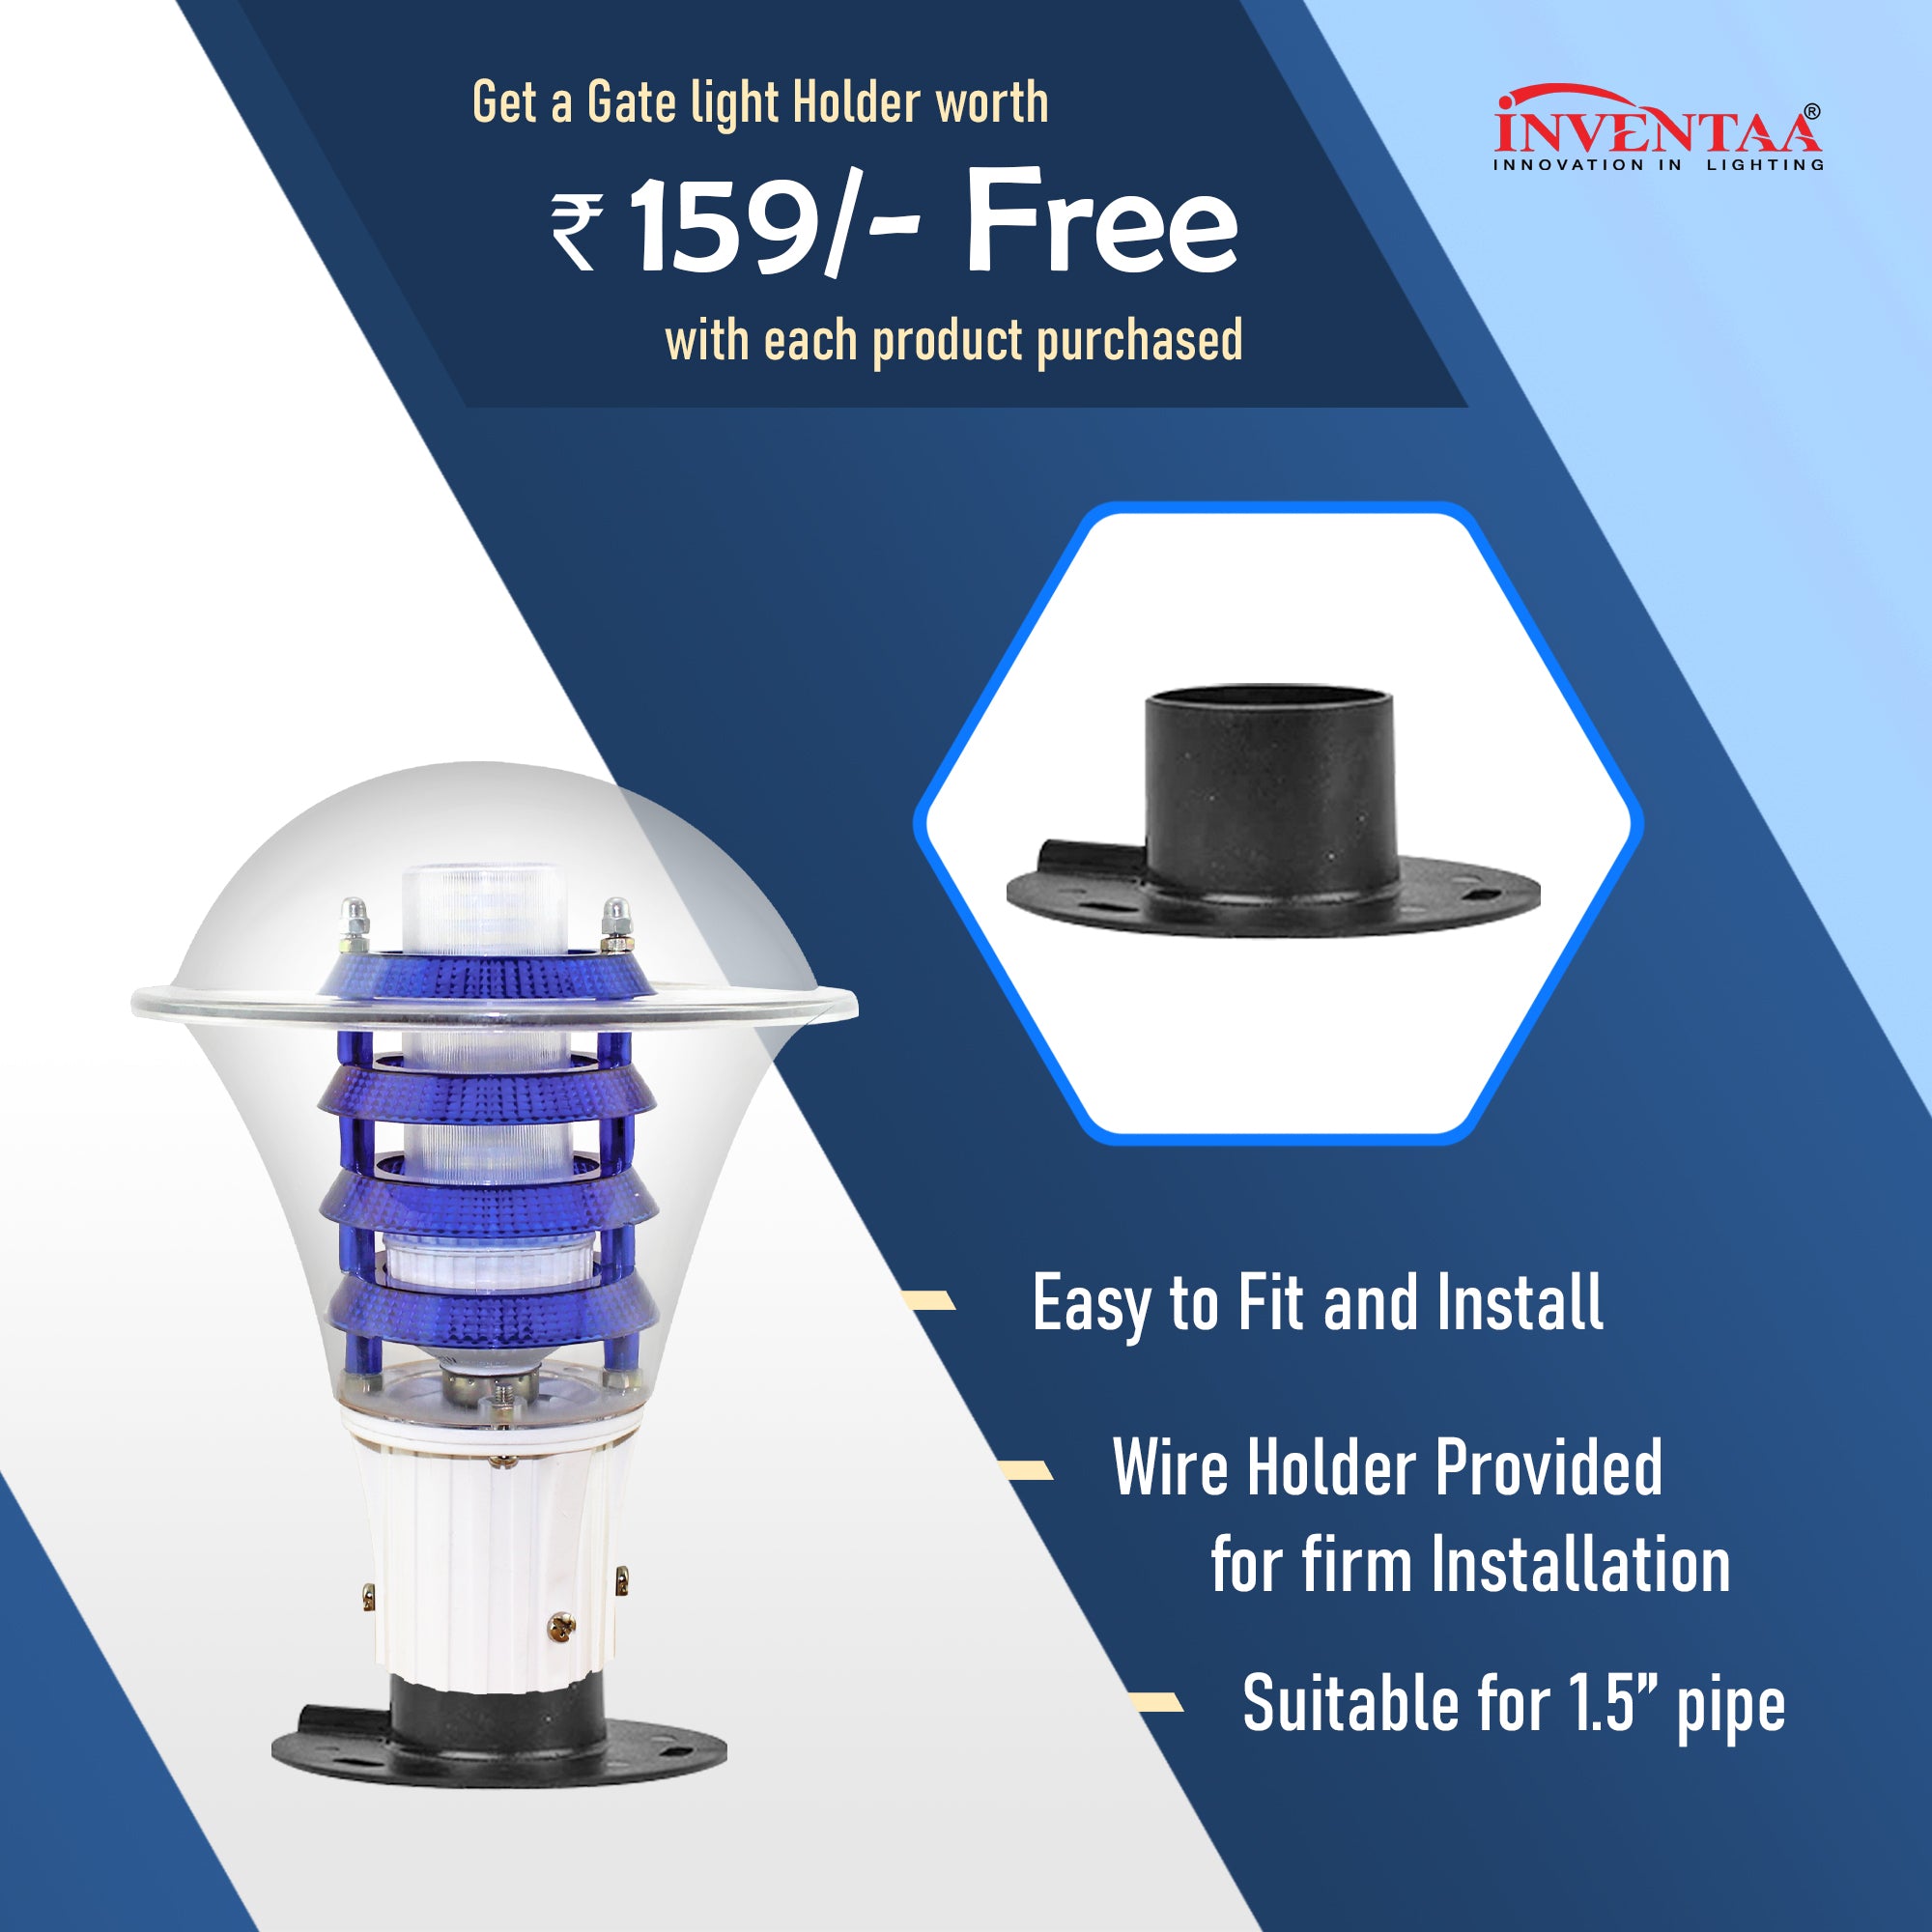 Free led gate light holder for Viva pc led gate light with warm white led bulb #bulb options_warm